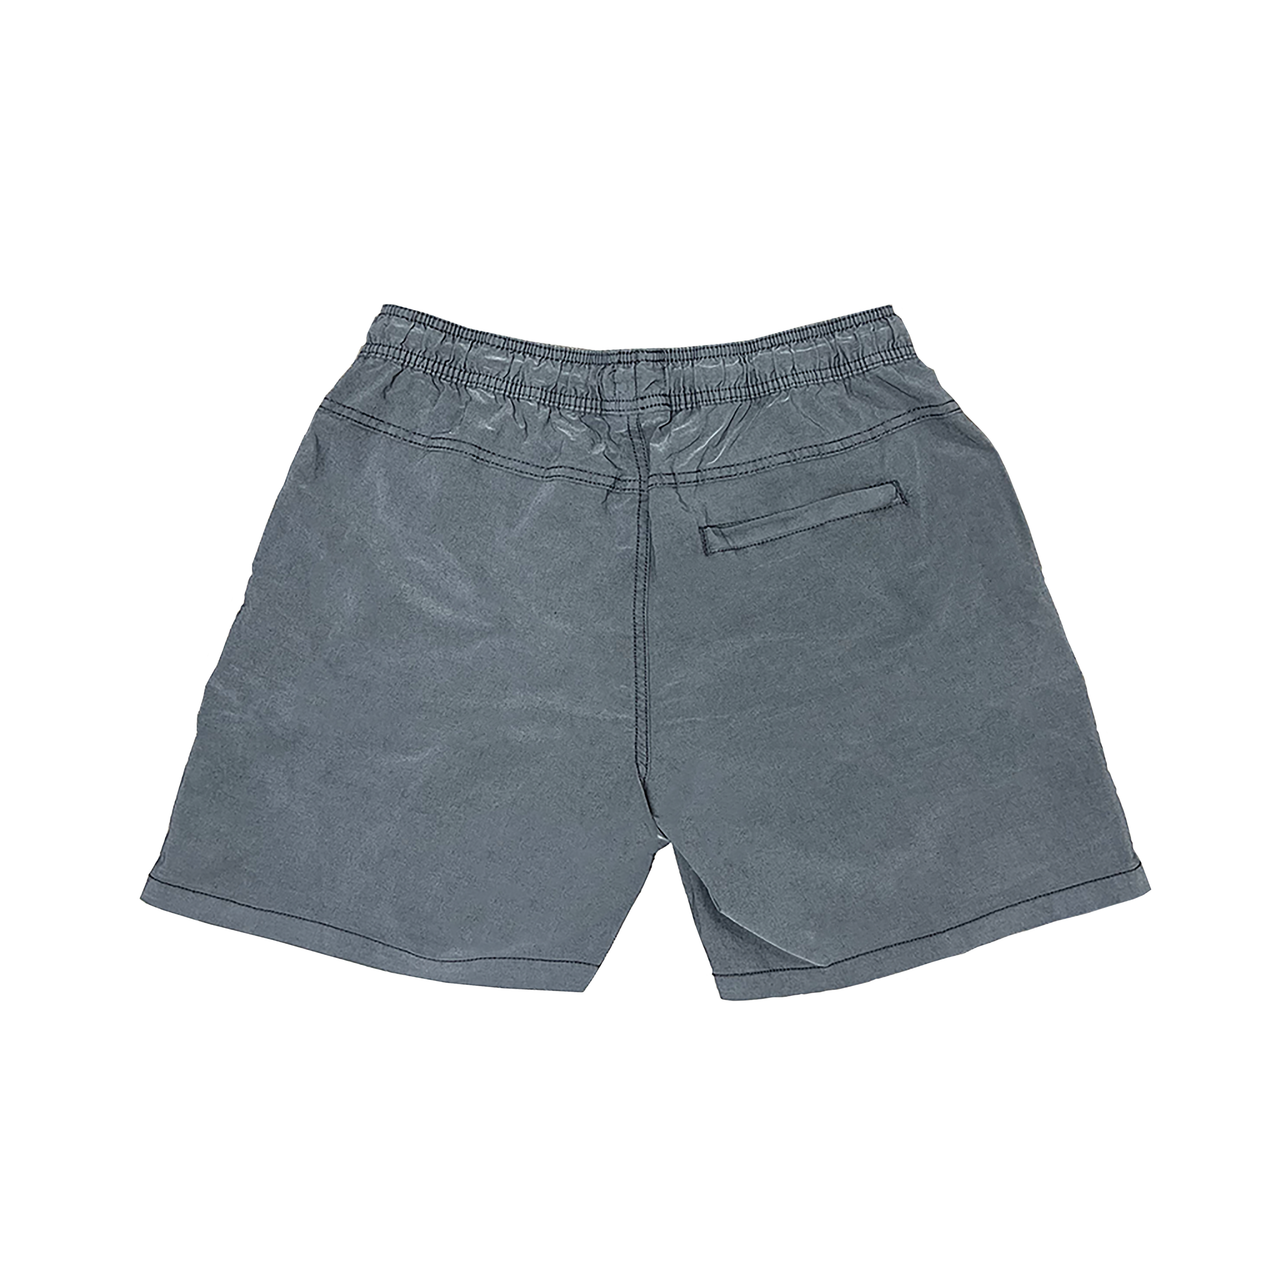 Staple Sunday Shorts- Charcoal